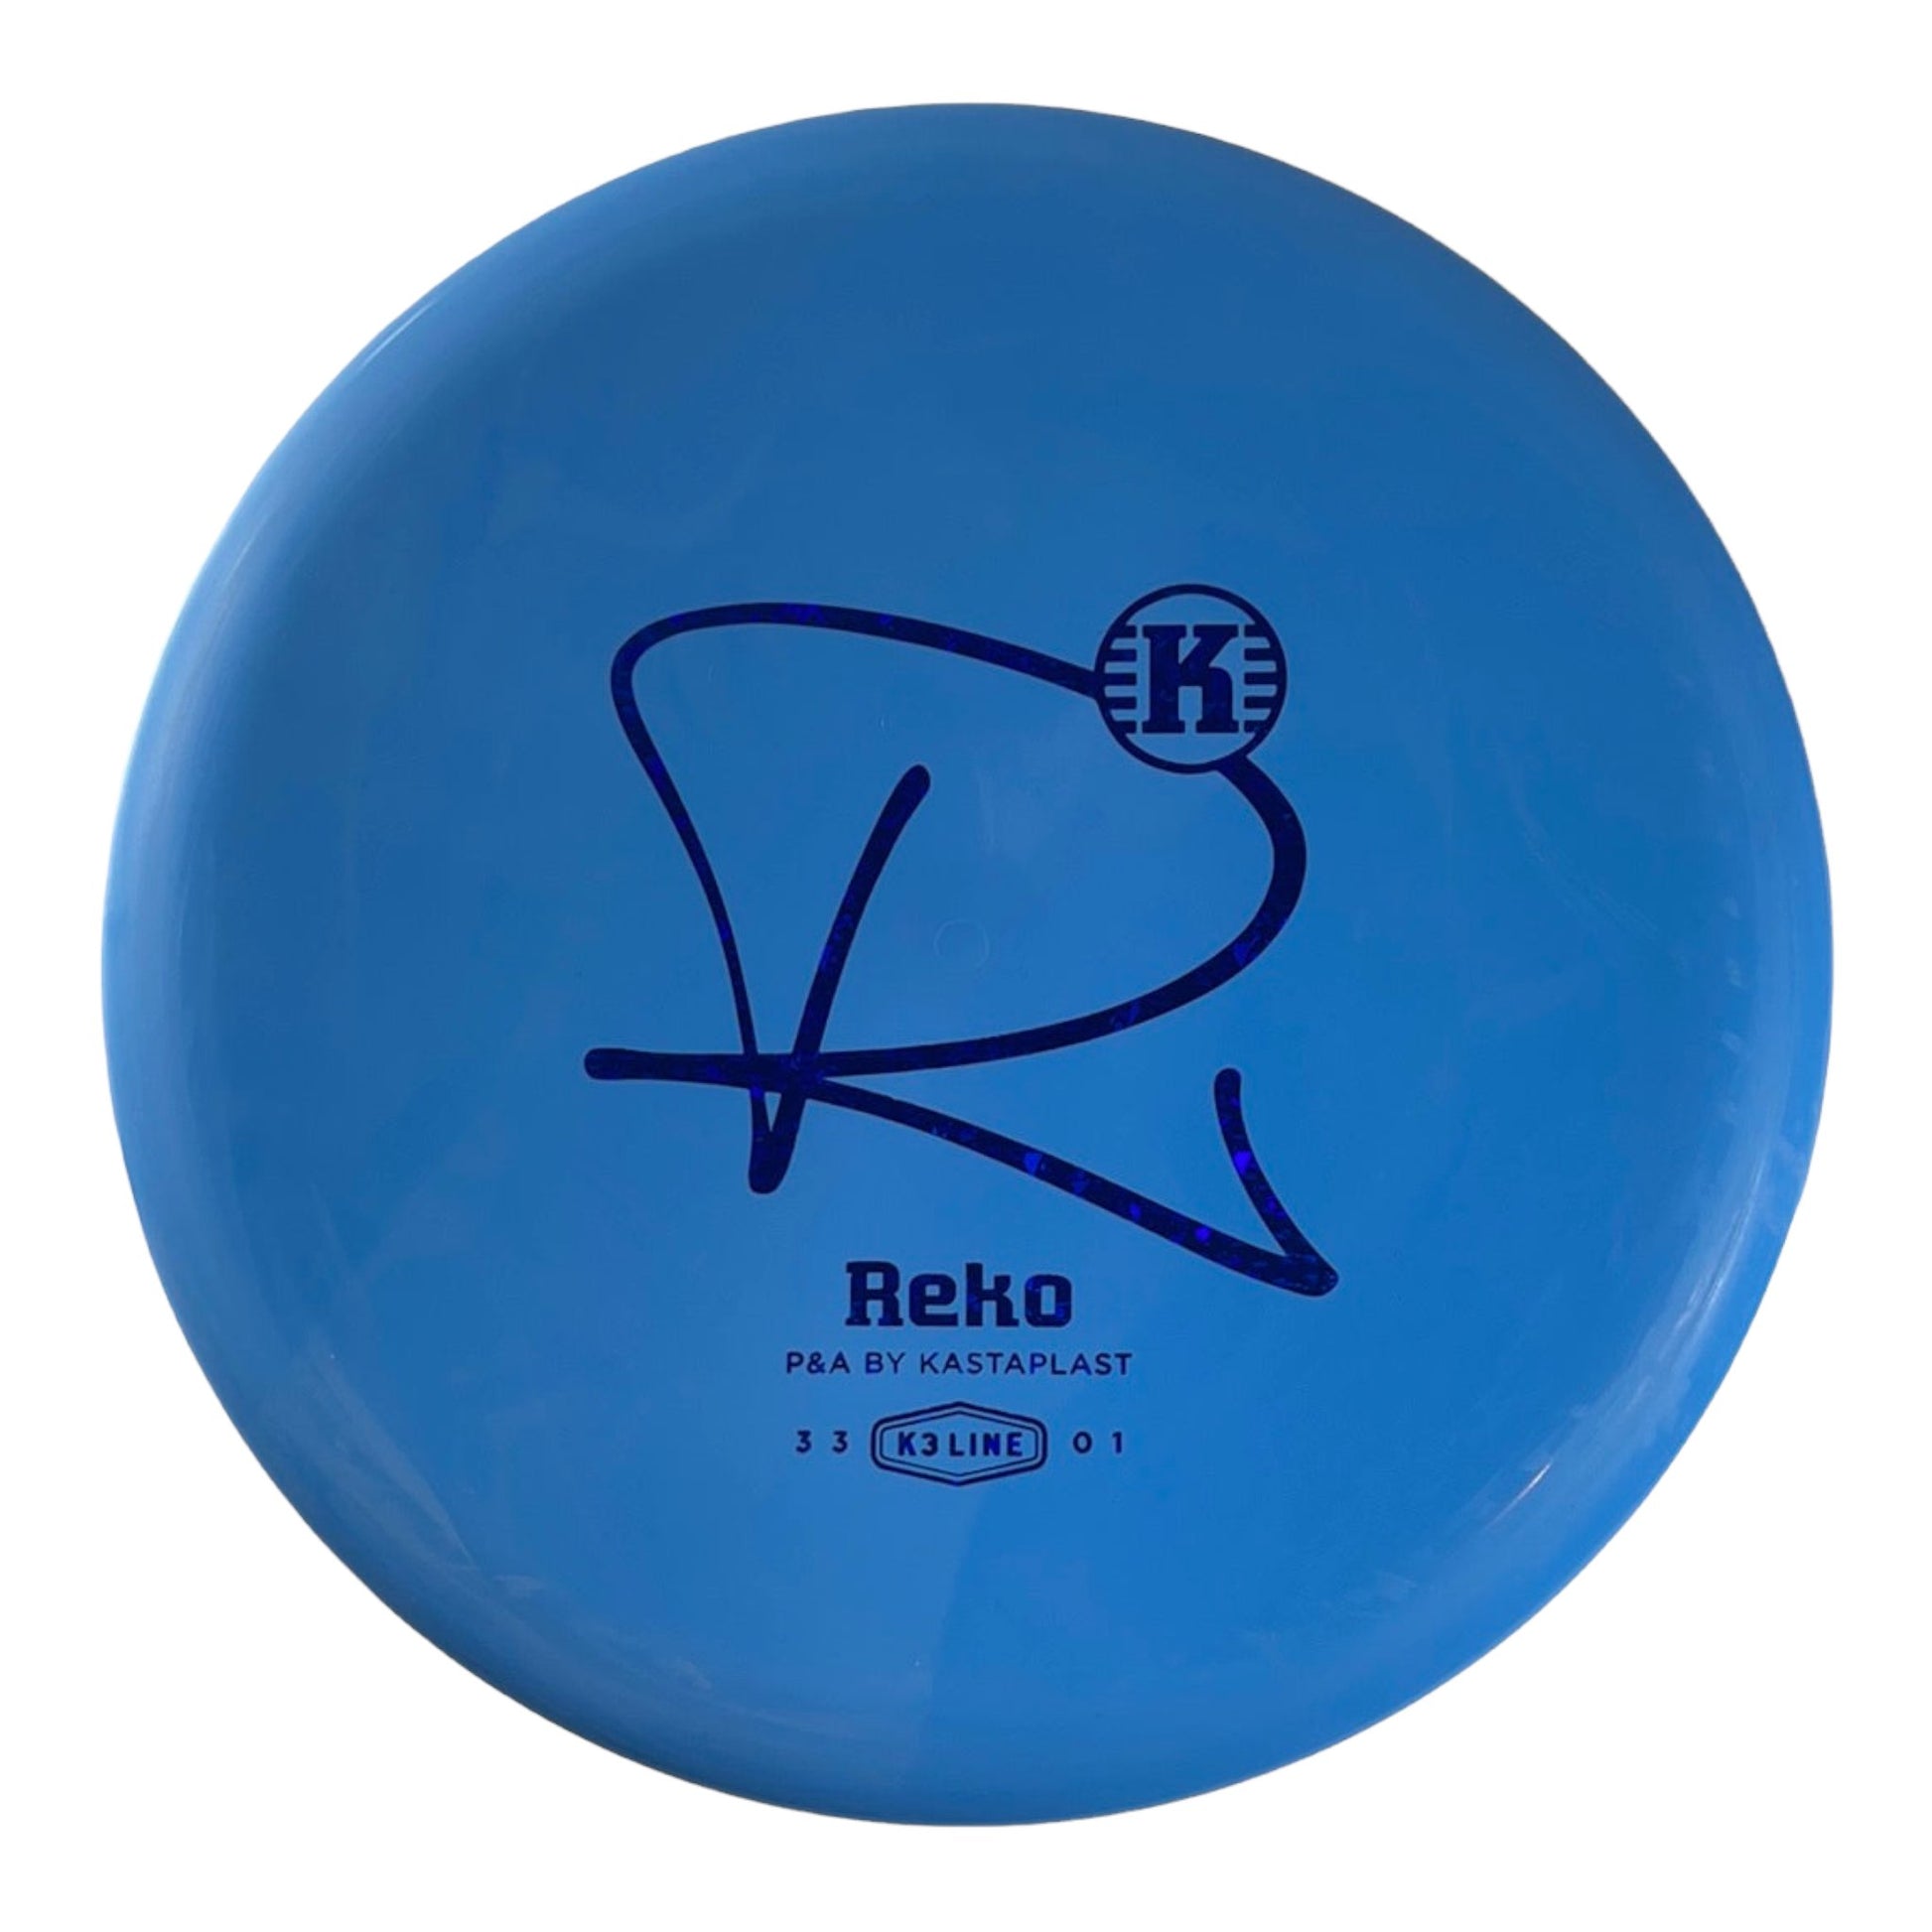 Kastaplast Reko | K3 | Blue/Blue 174g Disc Golf